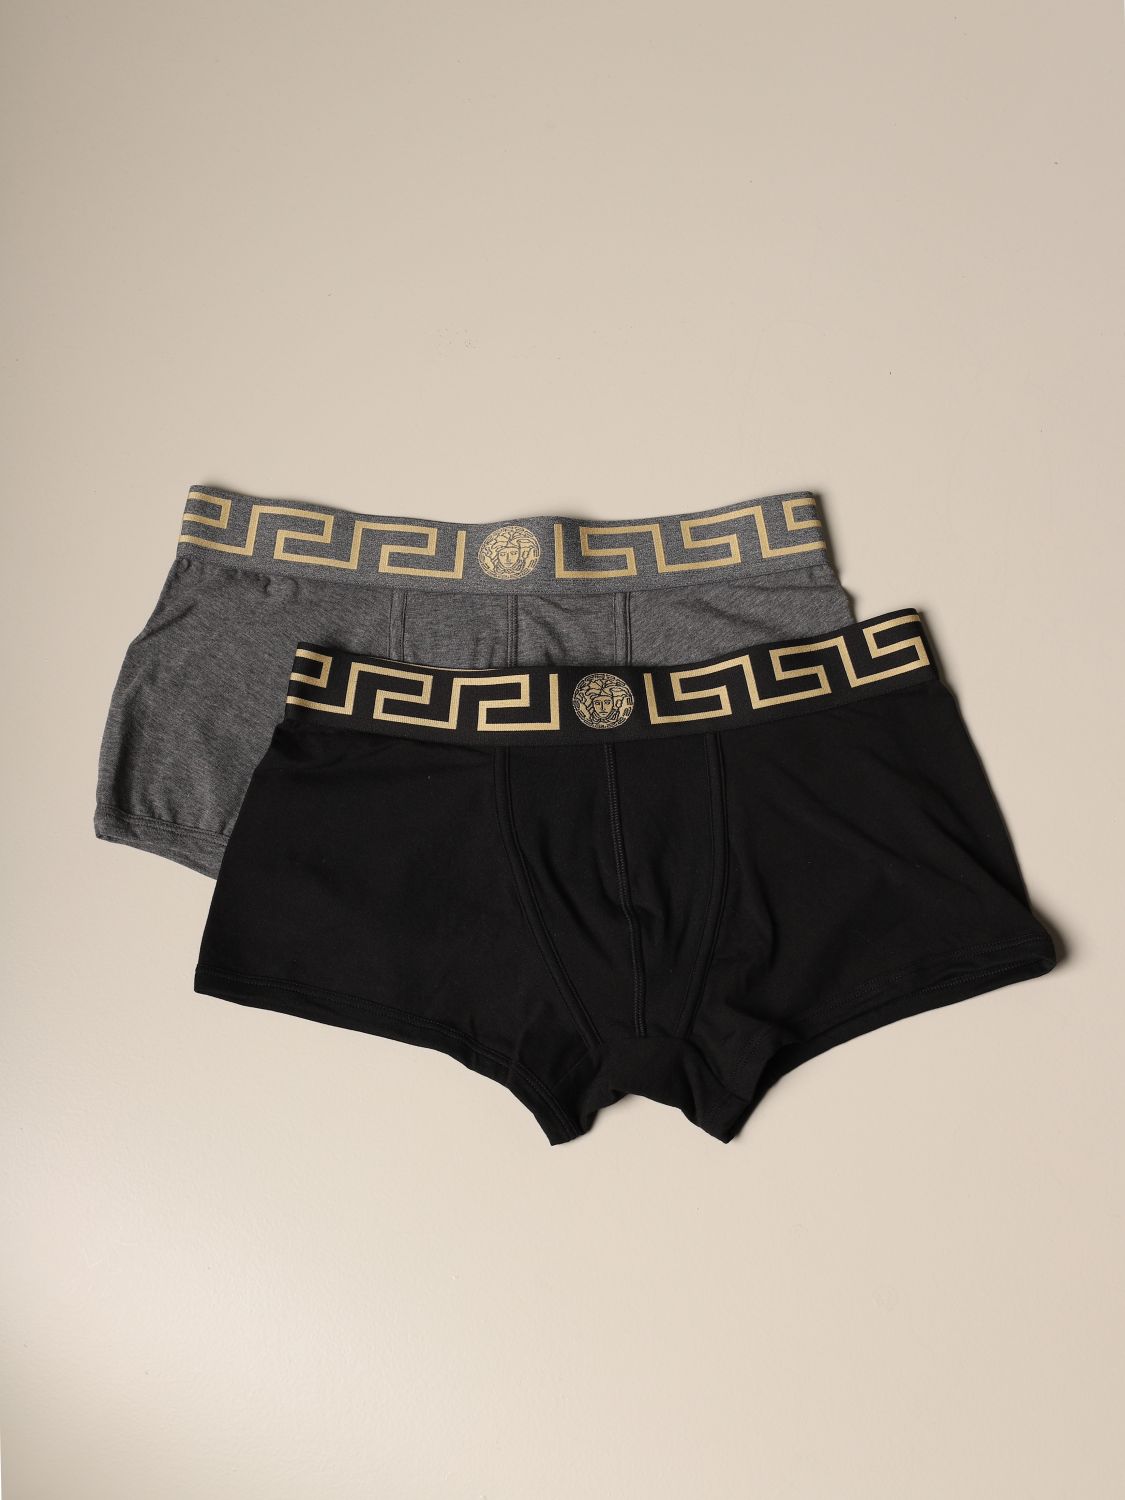 versace mens underwear uk